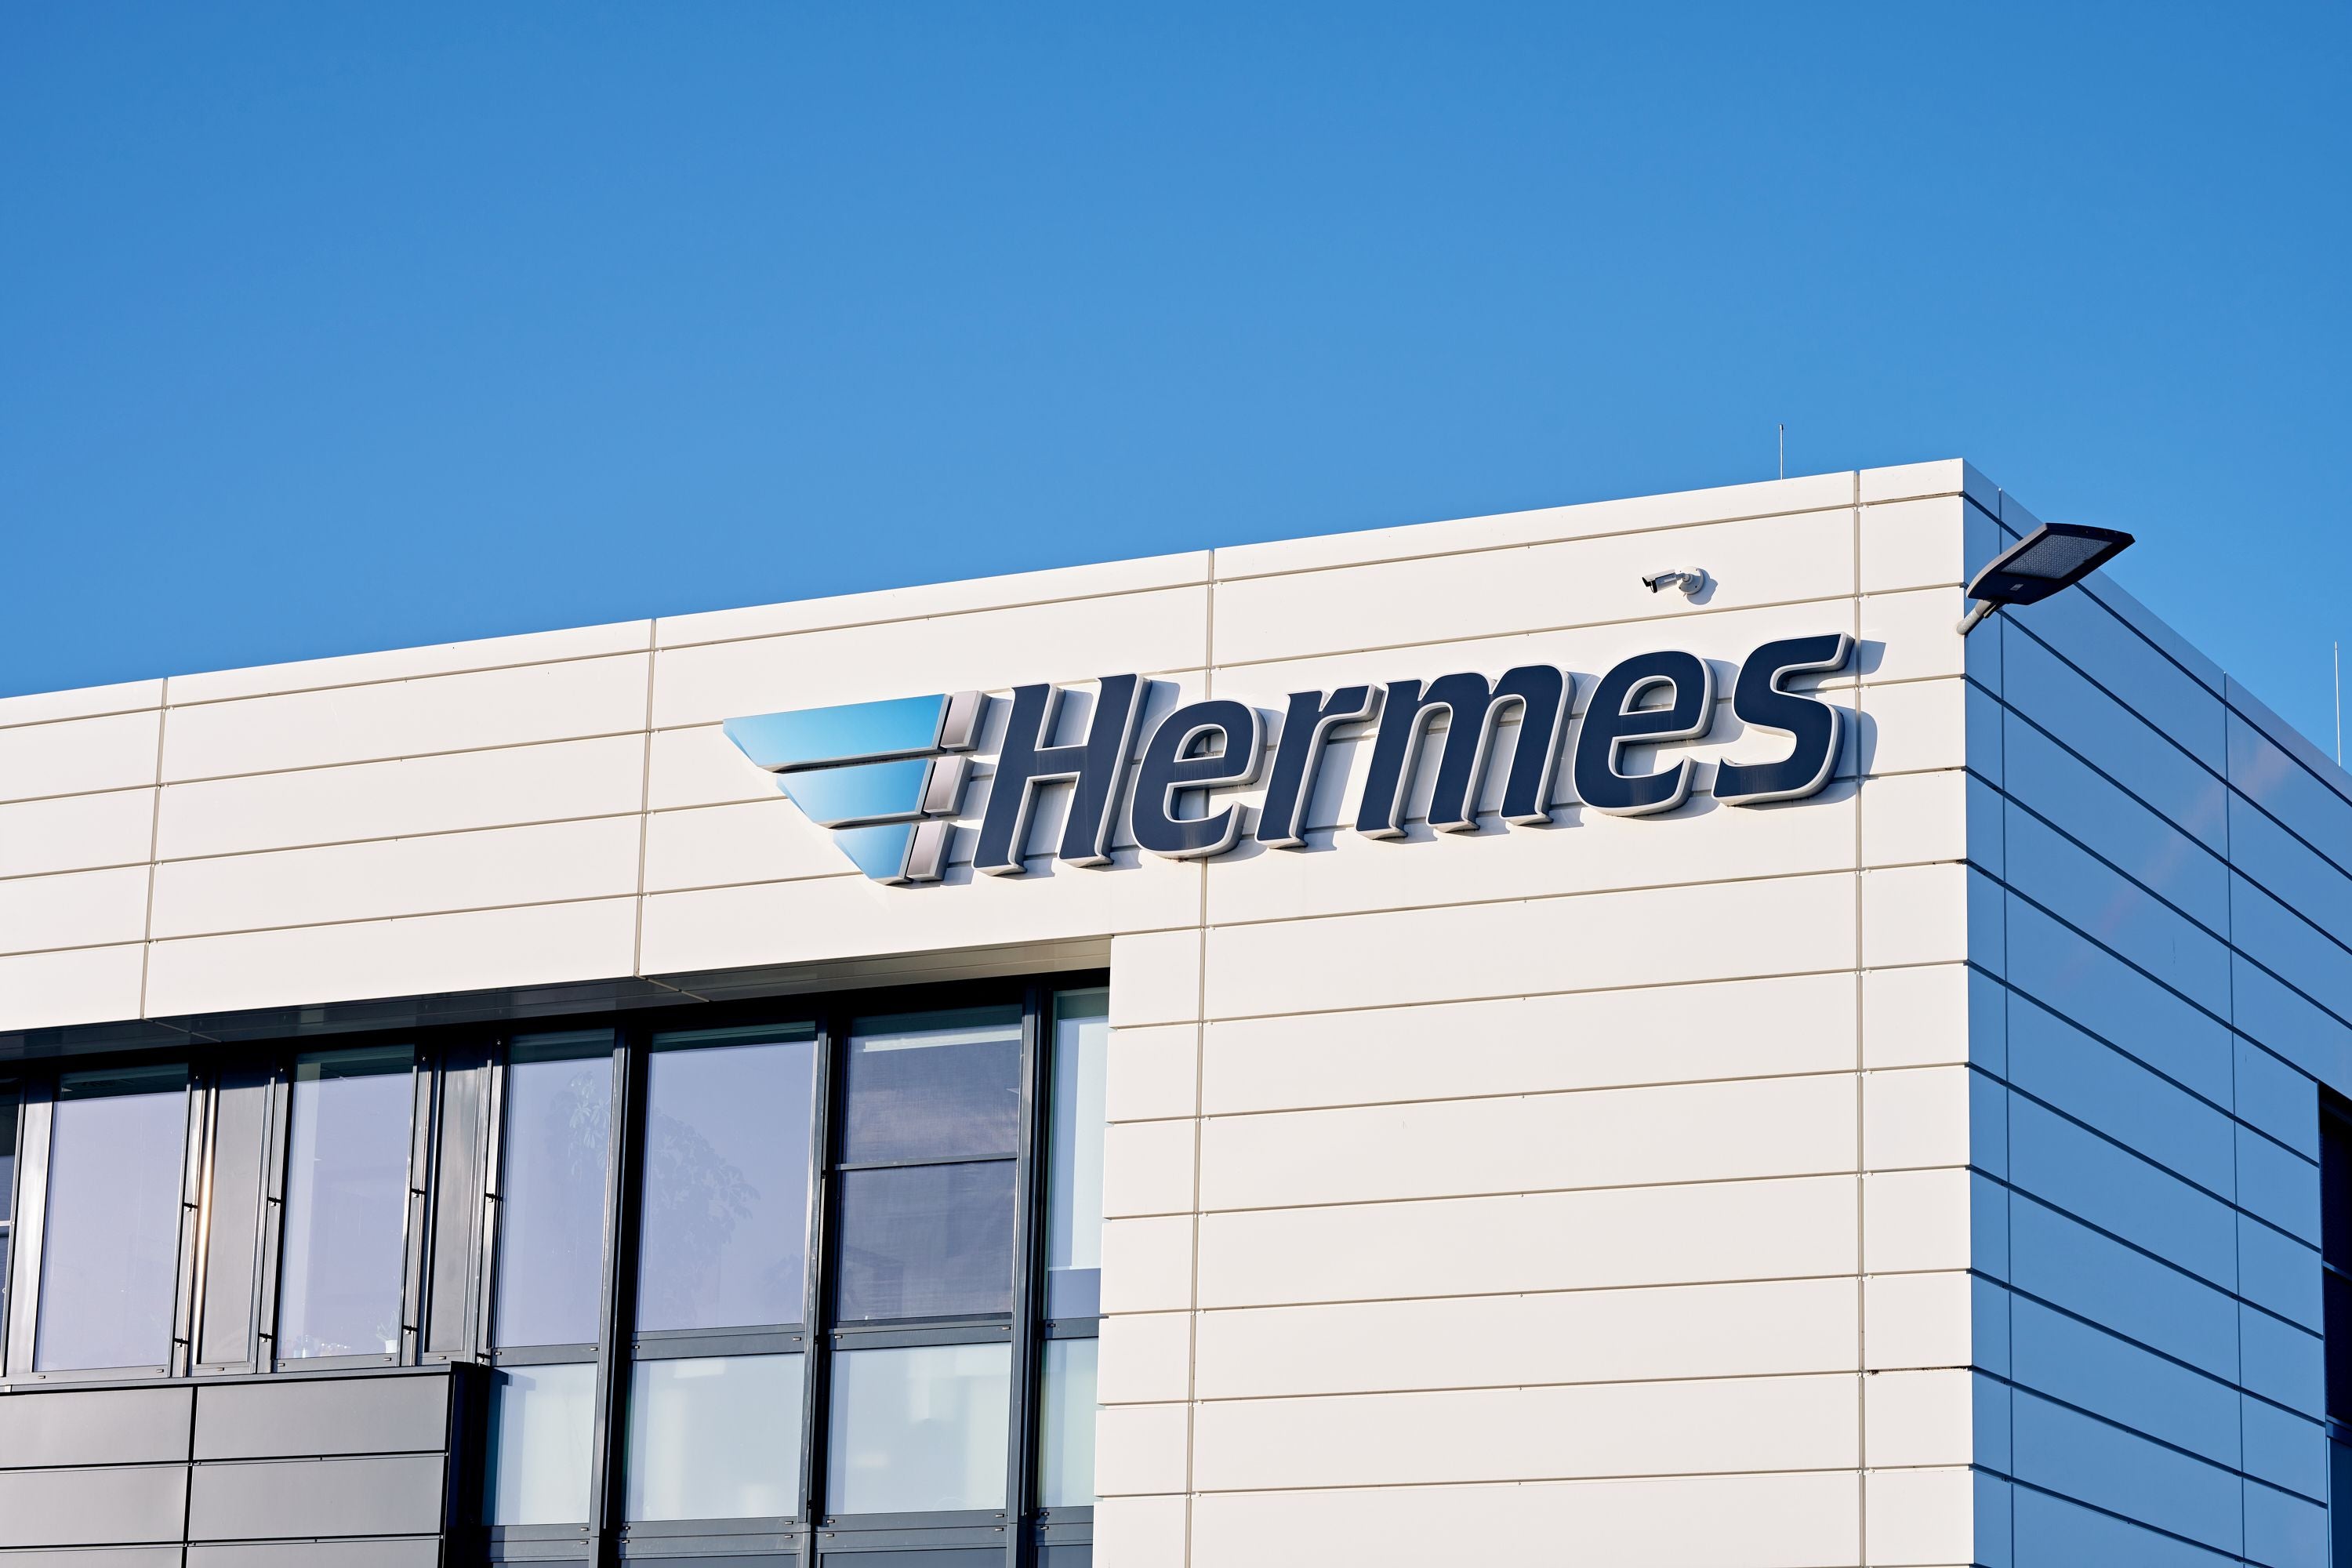 #Preisschock bei Paketen: Hermes warnt vor steigenden Kosten